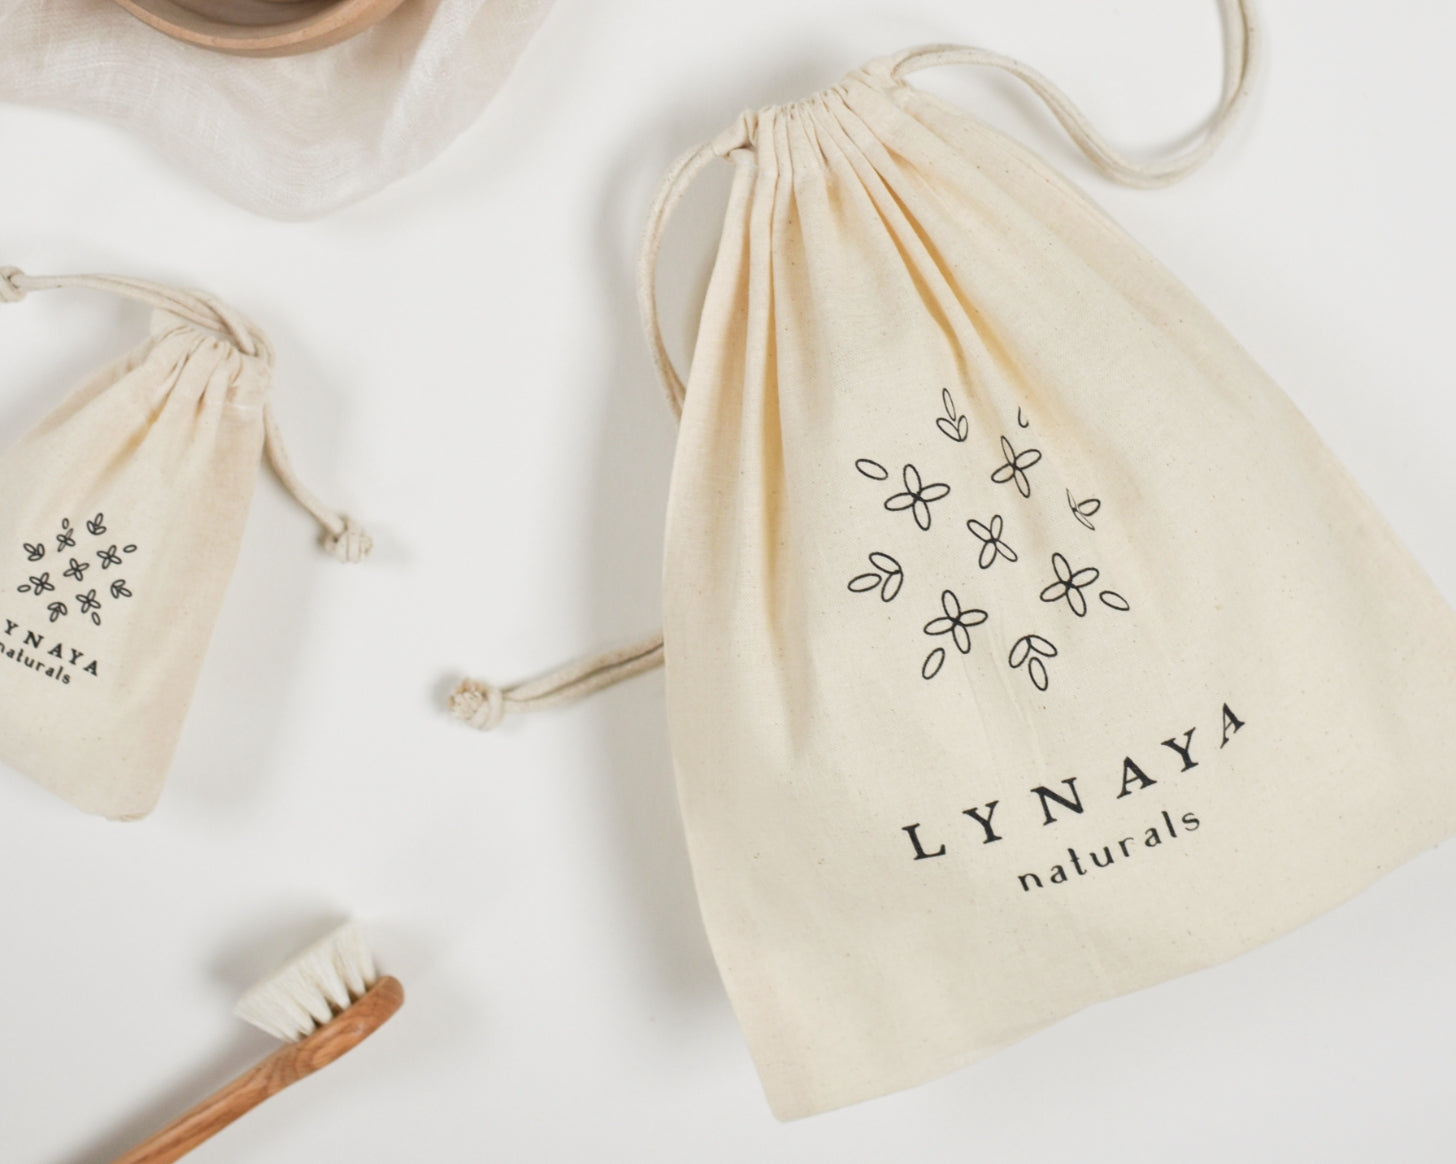 Pochon cadeau petite taille en coton organique – Lynaya naturals